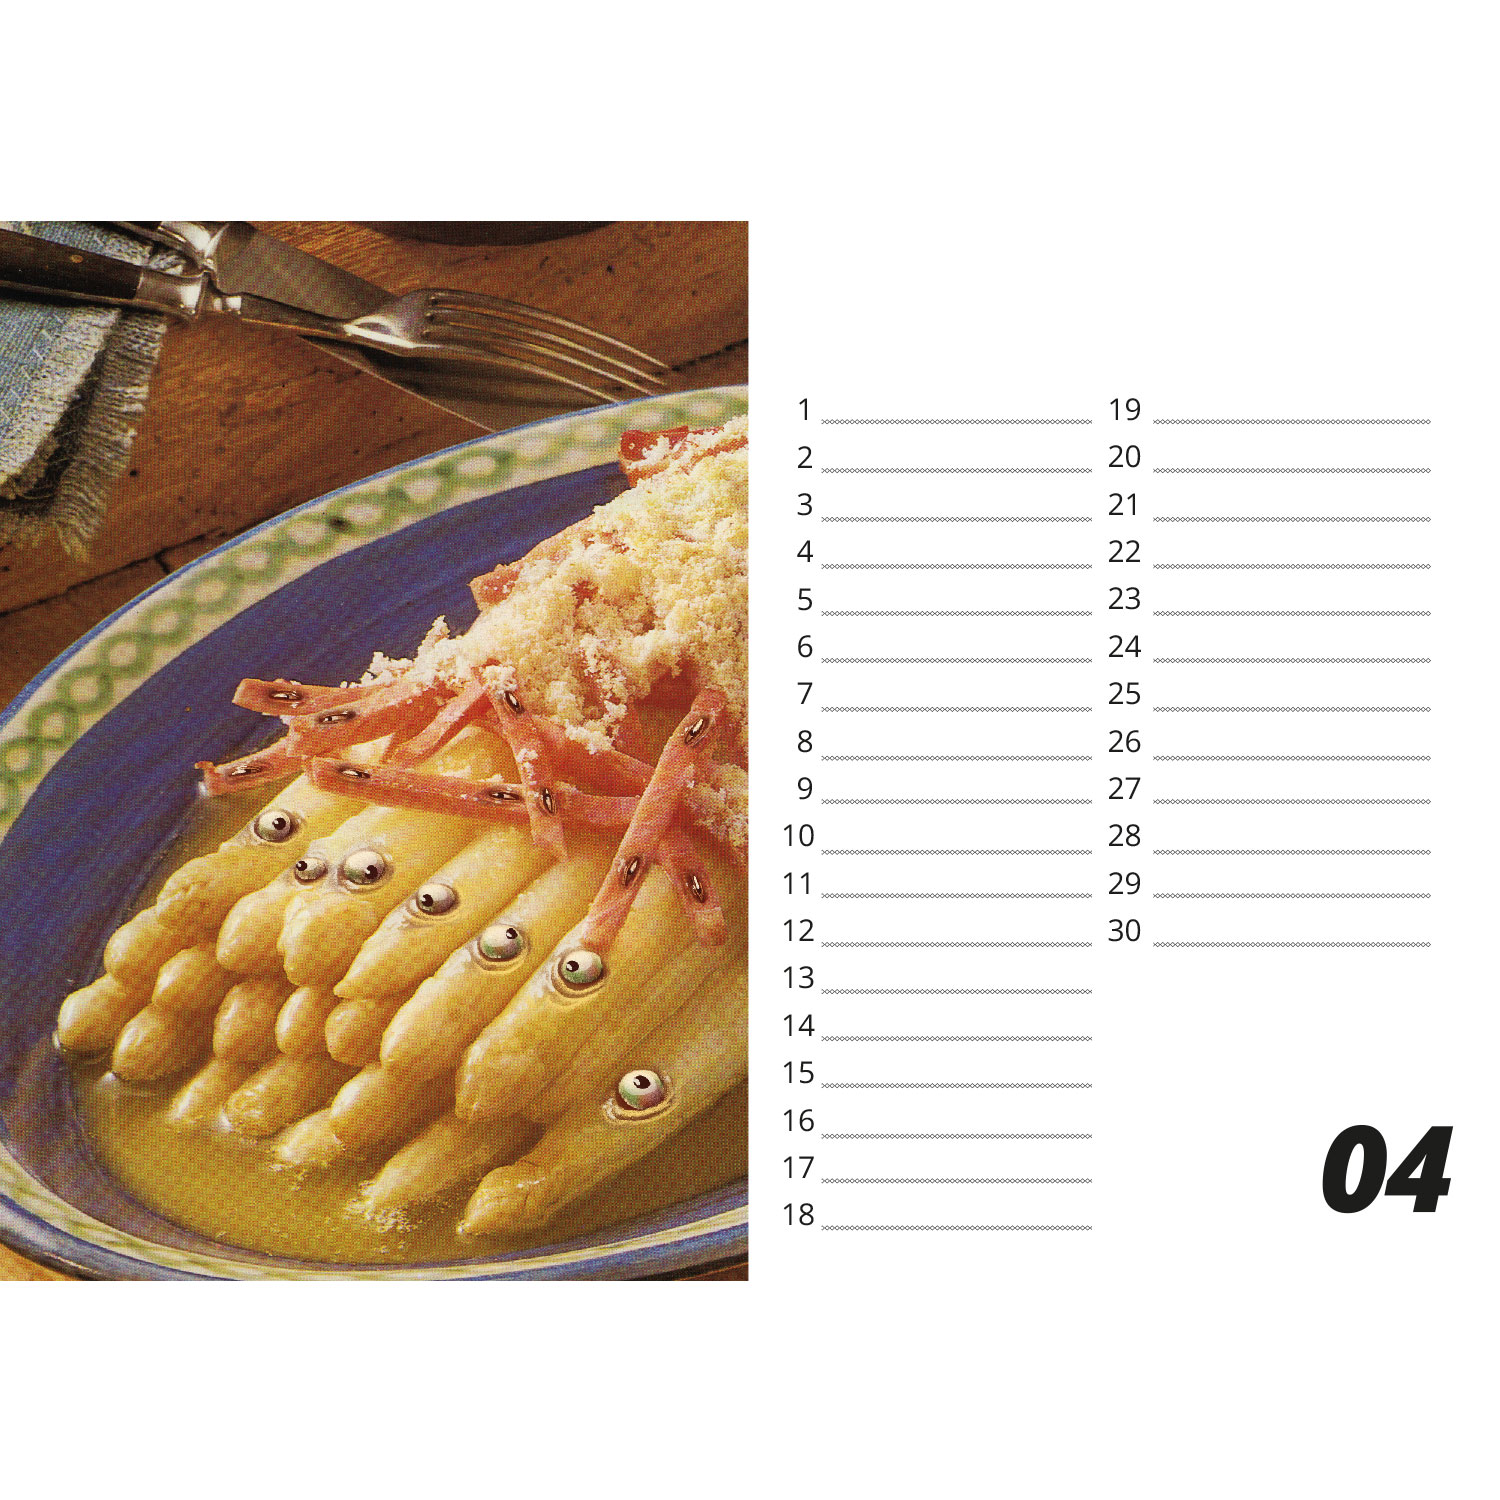 Calendario de mesa "Somos lo que comemos" - formato apaisado A5